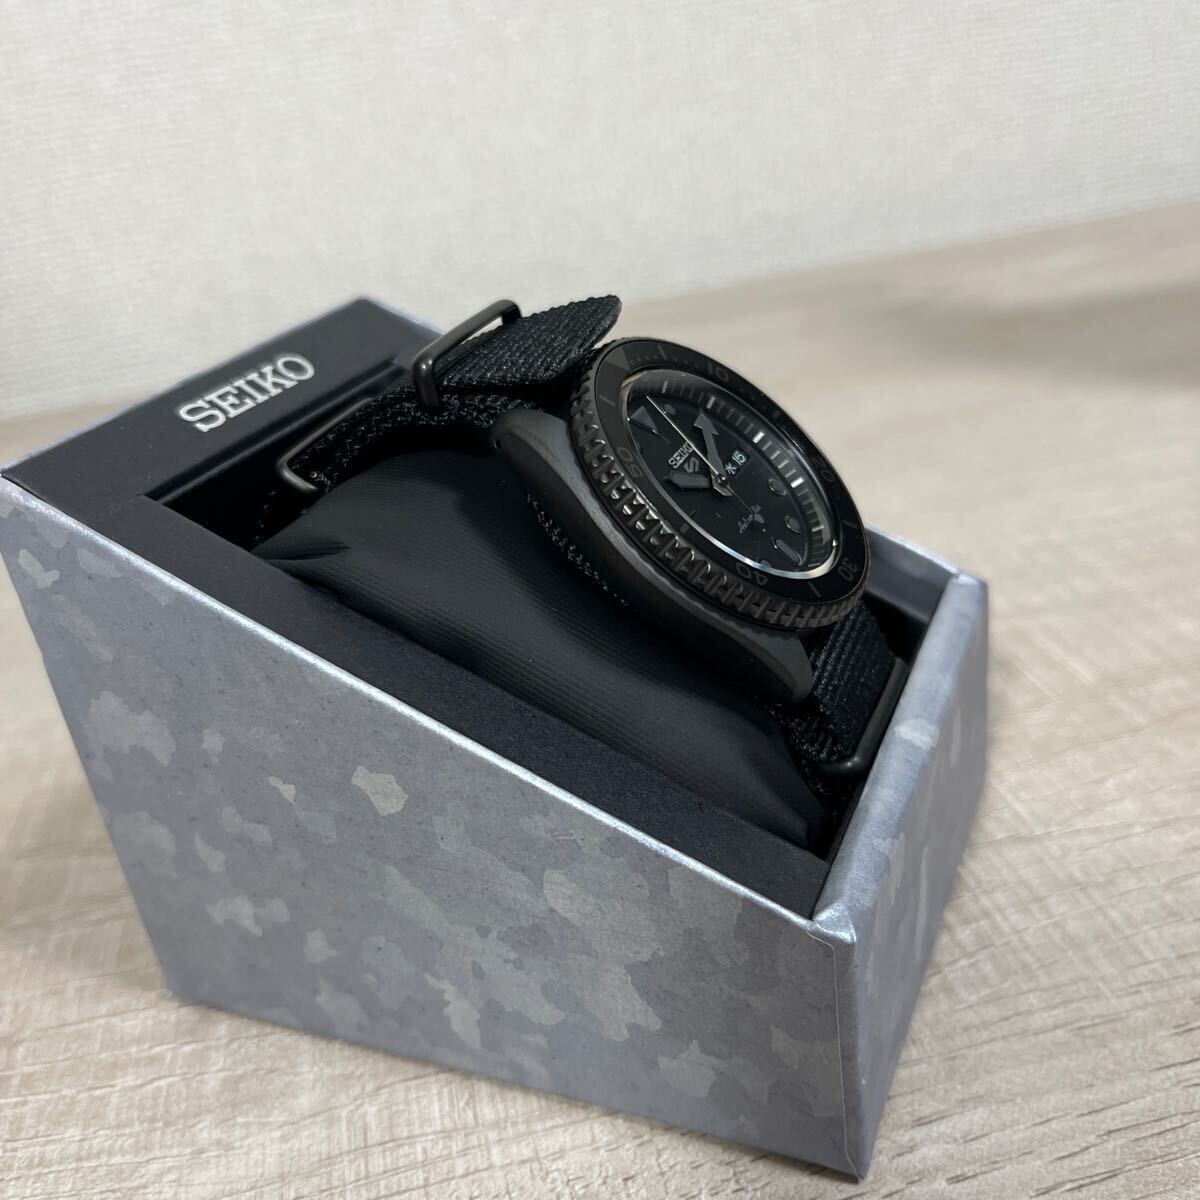 1 иен старт прямые продажи новый товар не использовался Seiko 5 спорт сделано в Японии самозаводящиеся часы автоматический ограниченная модель наручные часы SBSA025 SEIKO Street все черный 